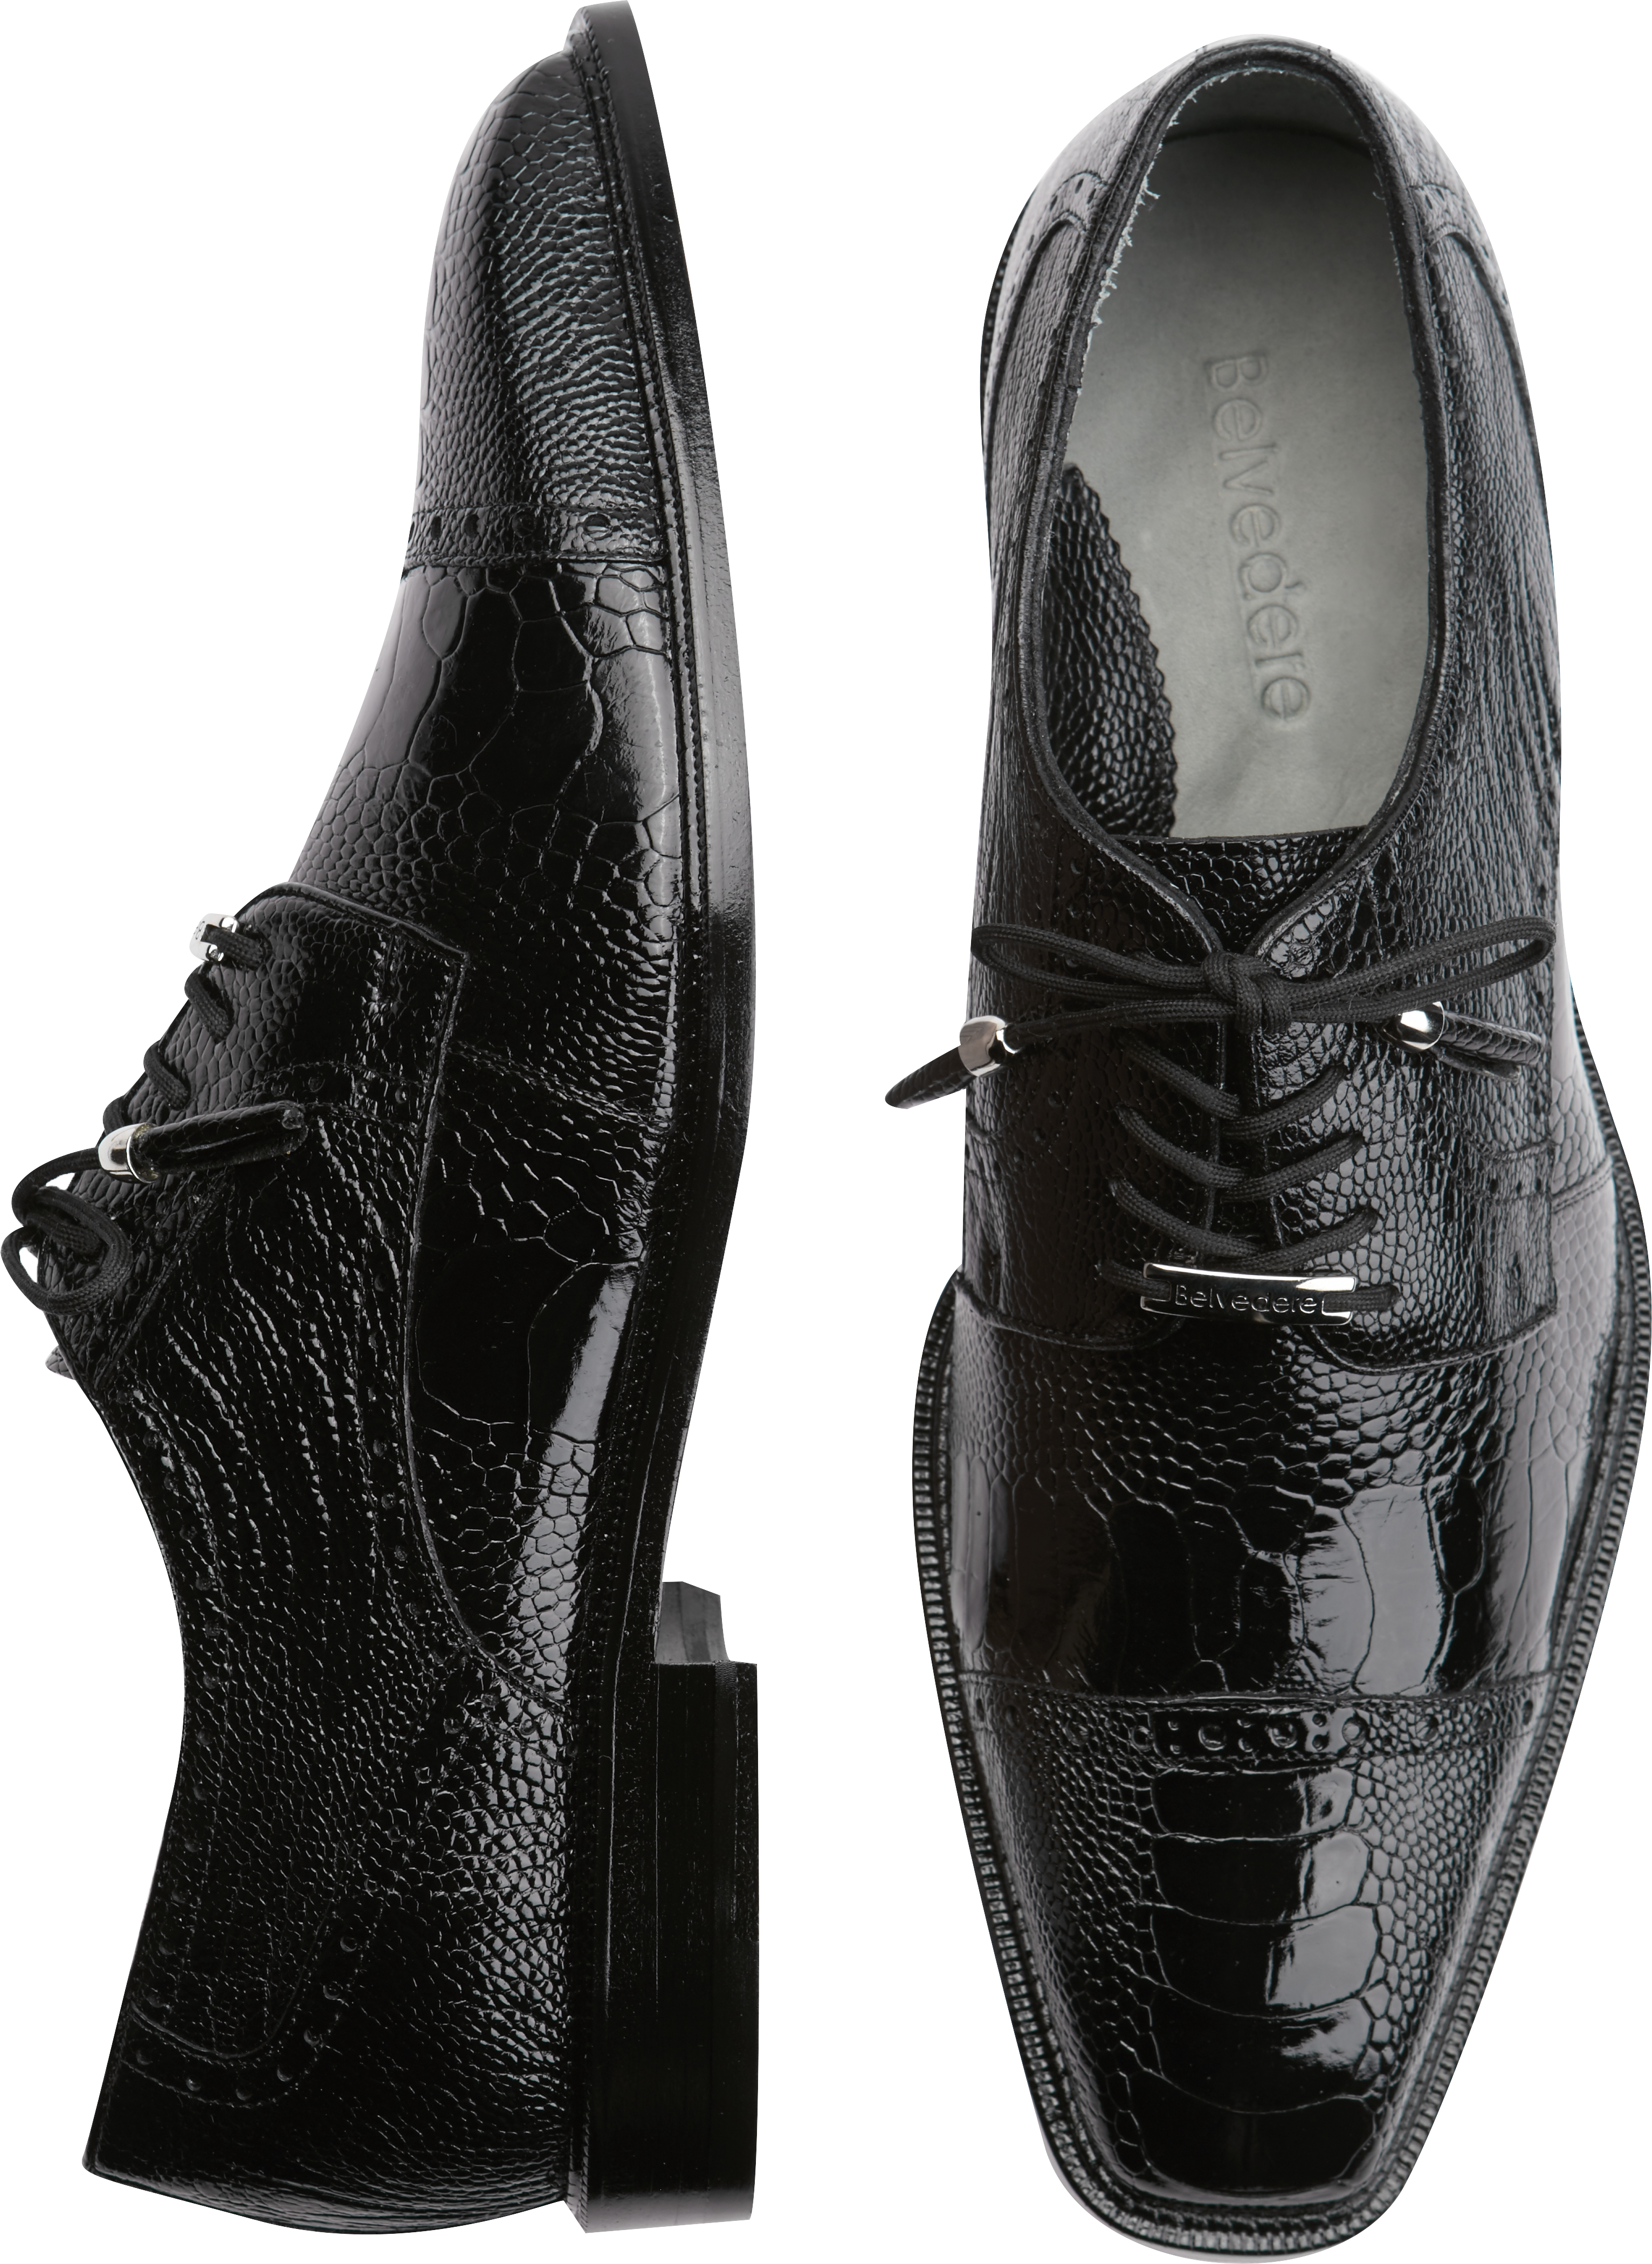 Belvedere Batta Black Ostrich Cap-toe Lace-Ups - Men's Shoes | Men's ...